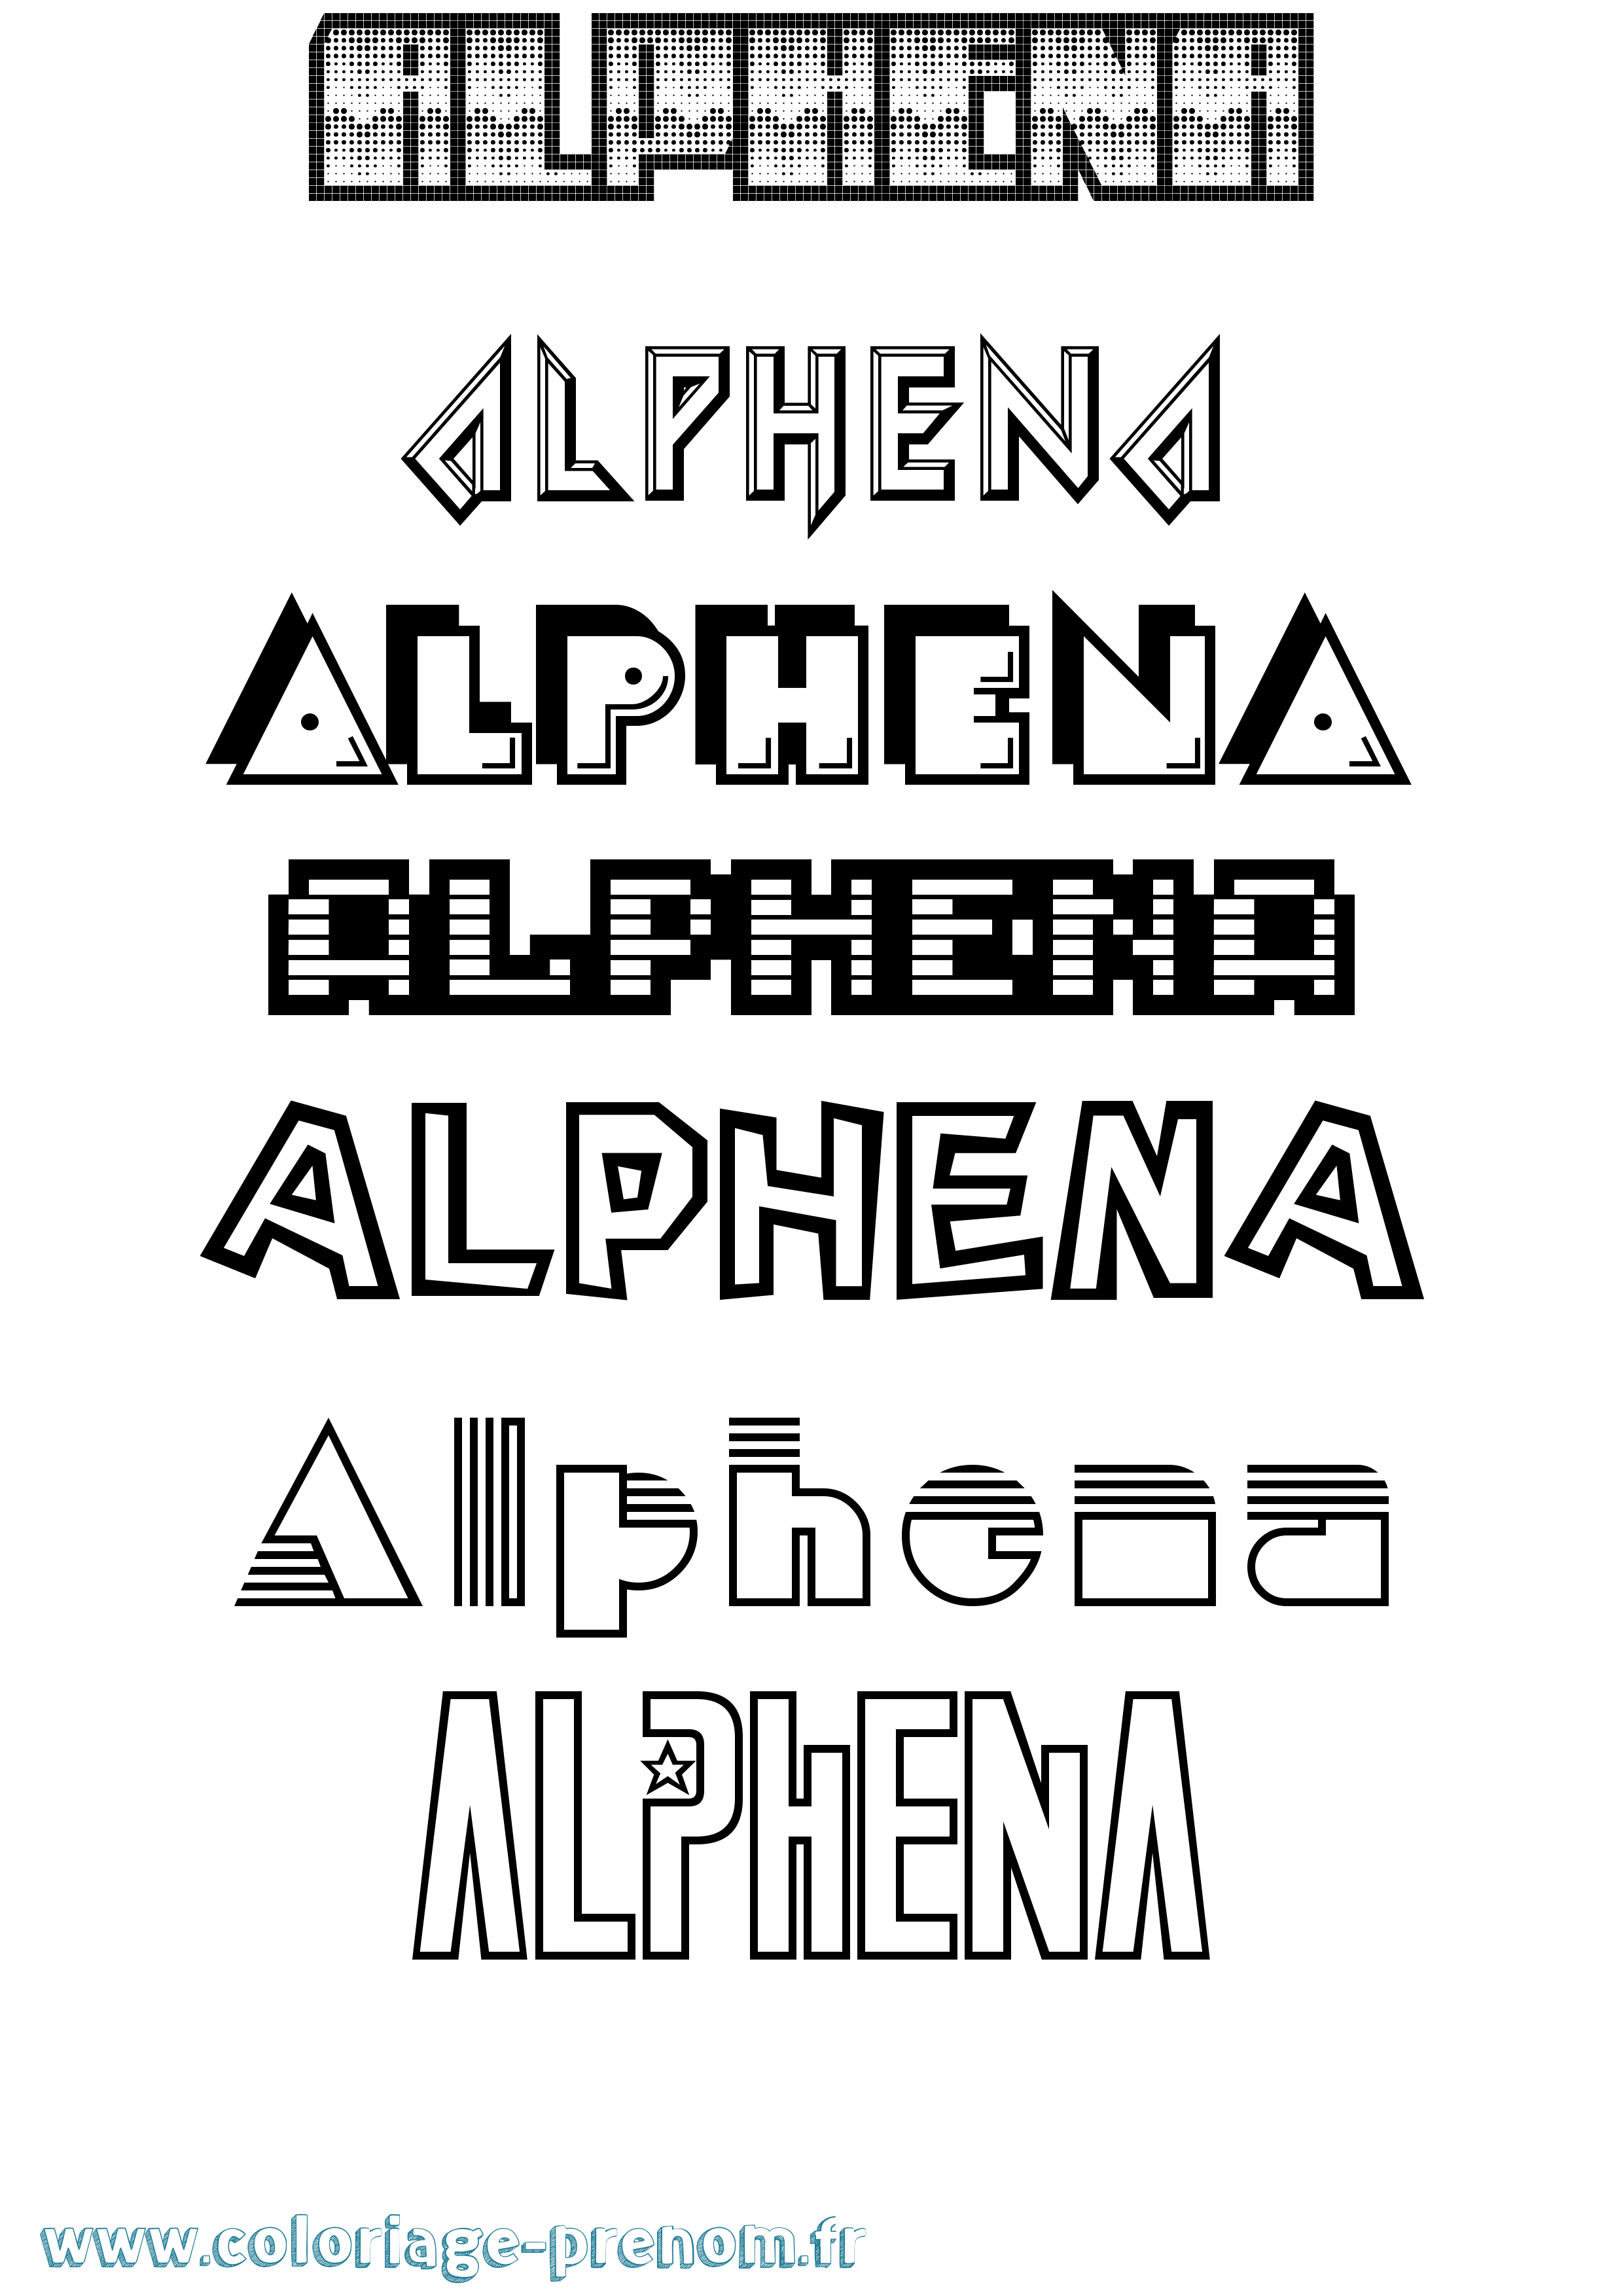 Coloriage prénom Alphena Jeux Vidéos